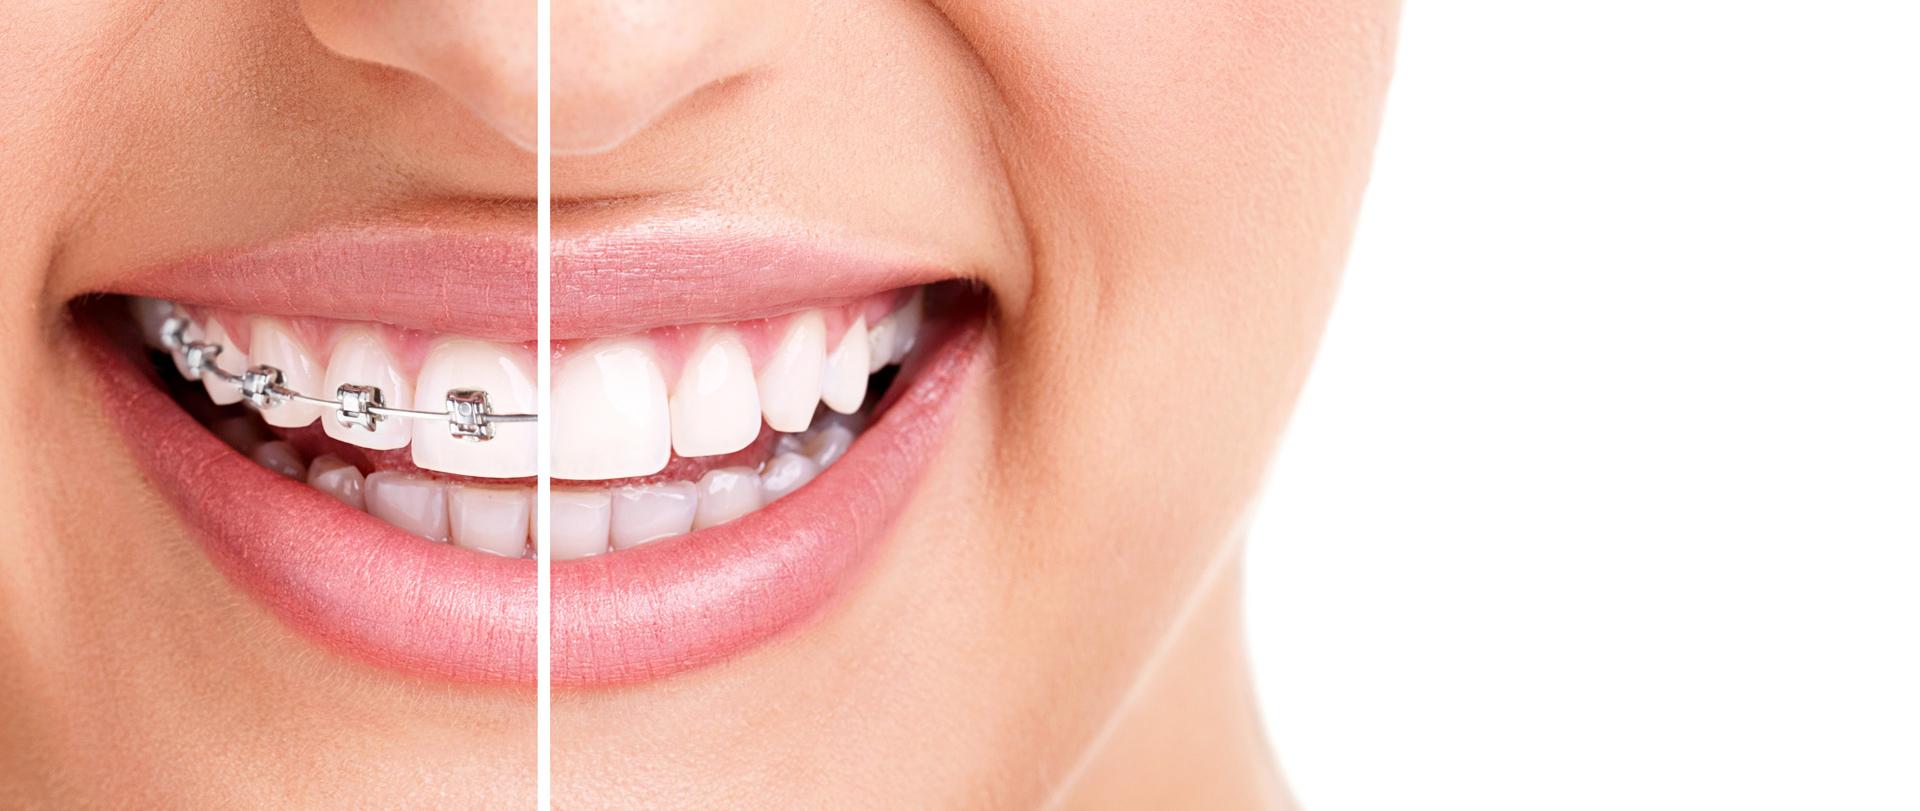 Ortodont ljubljana cenik